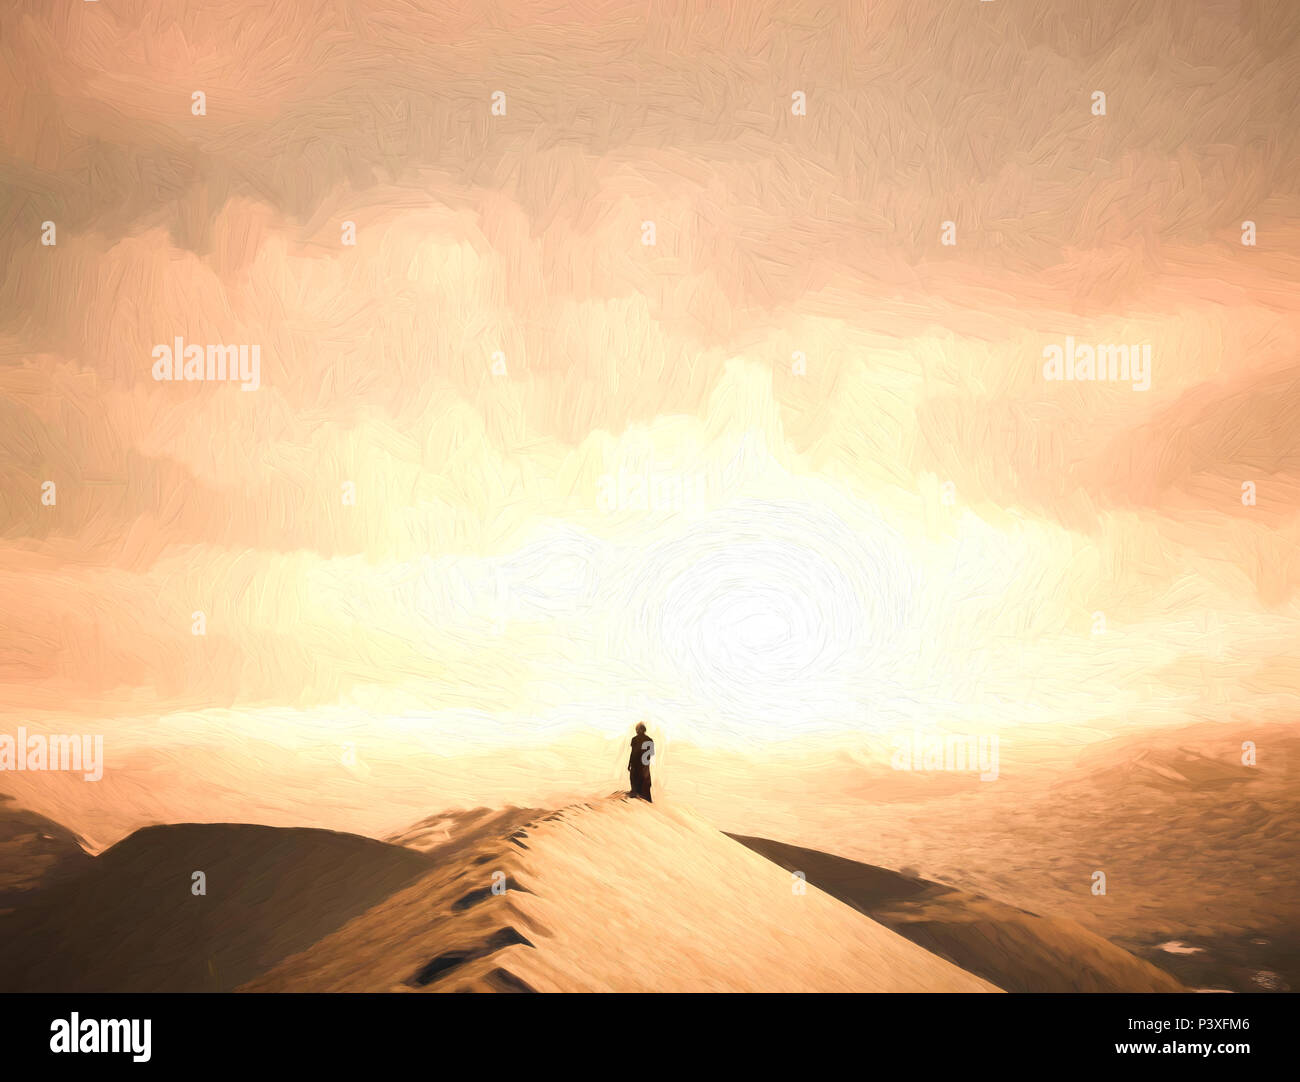 Badain Jaran desierto dunas de arena chica hiker luz de puesta de sol Foto de stock